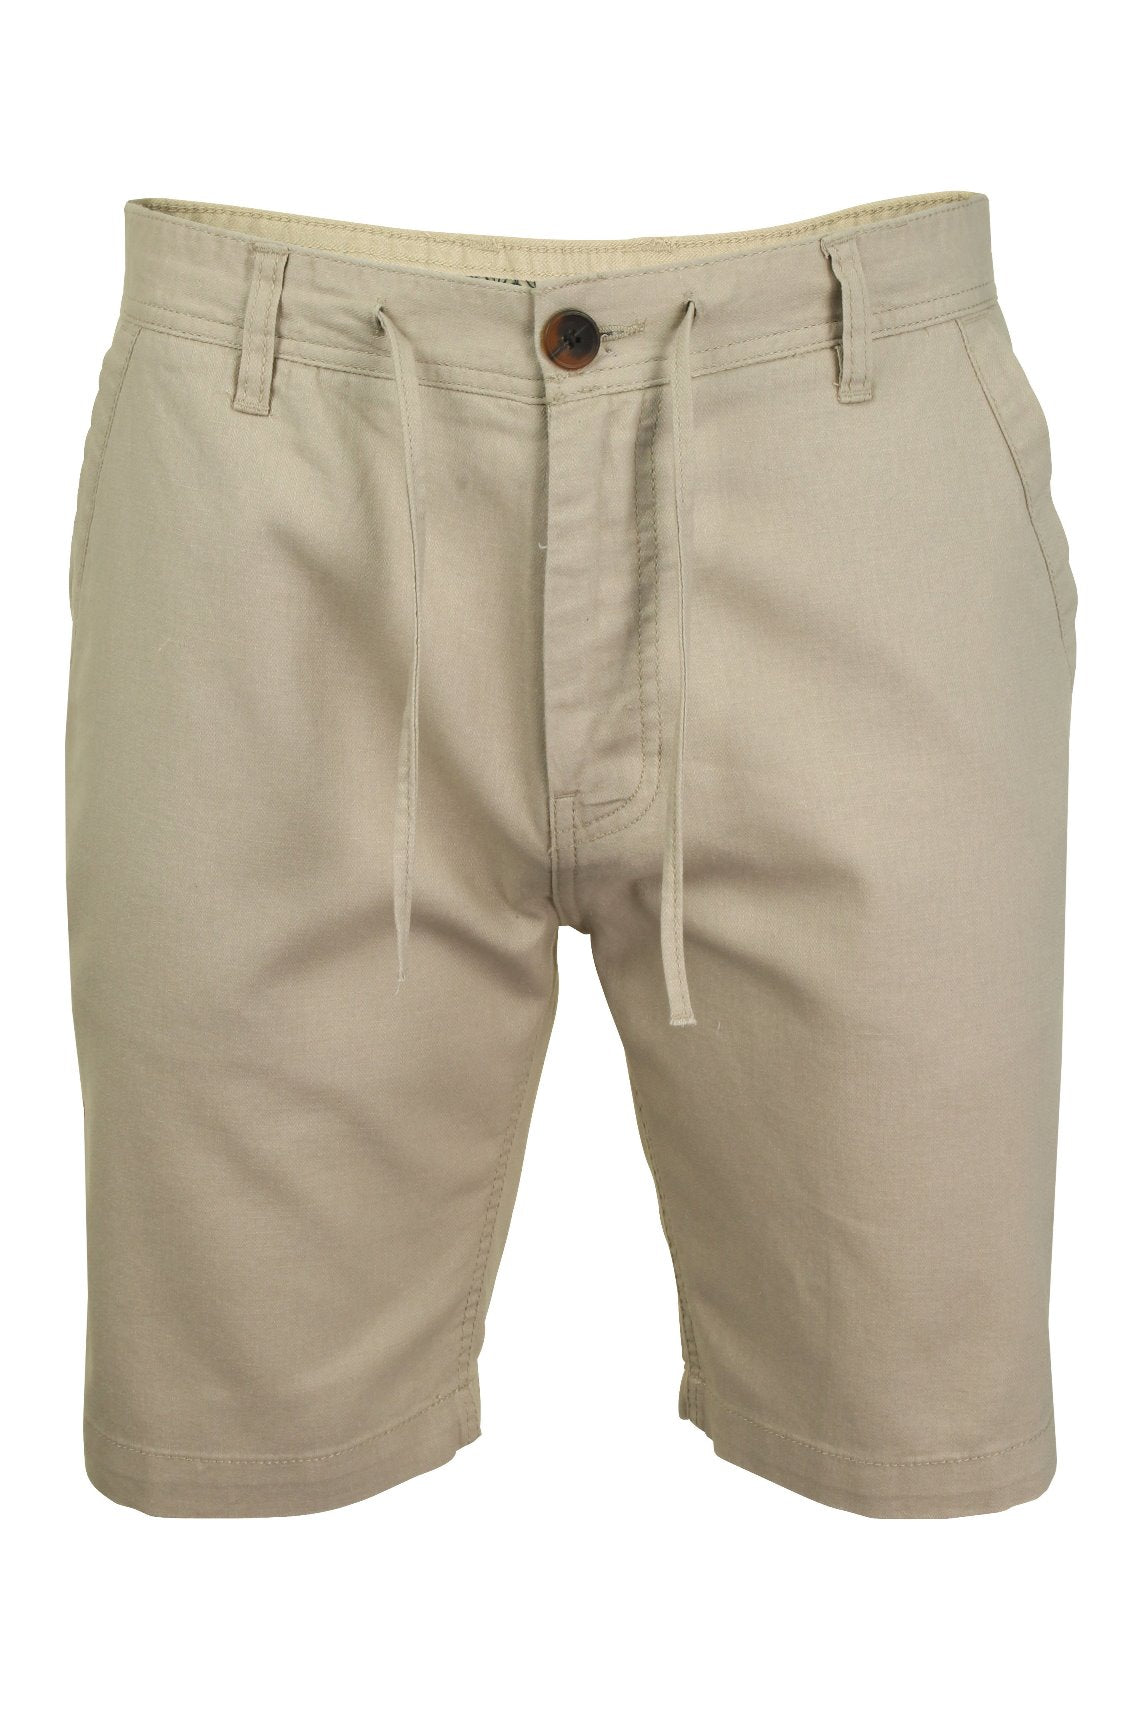 Mens Linen Mix Chino Shorts by Xact-Main Image